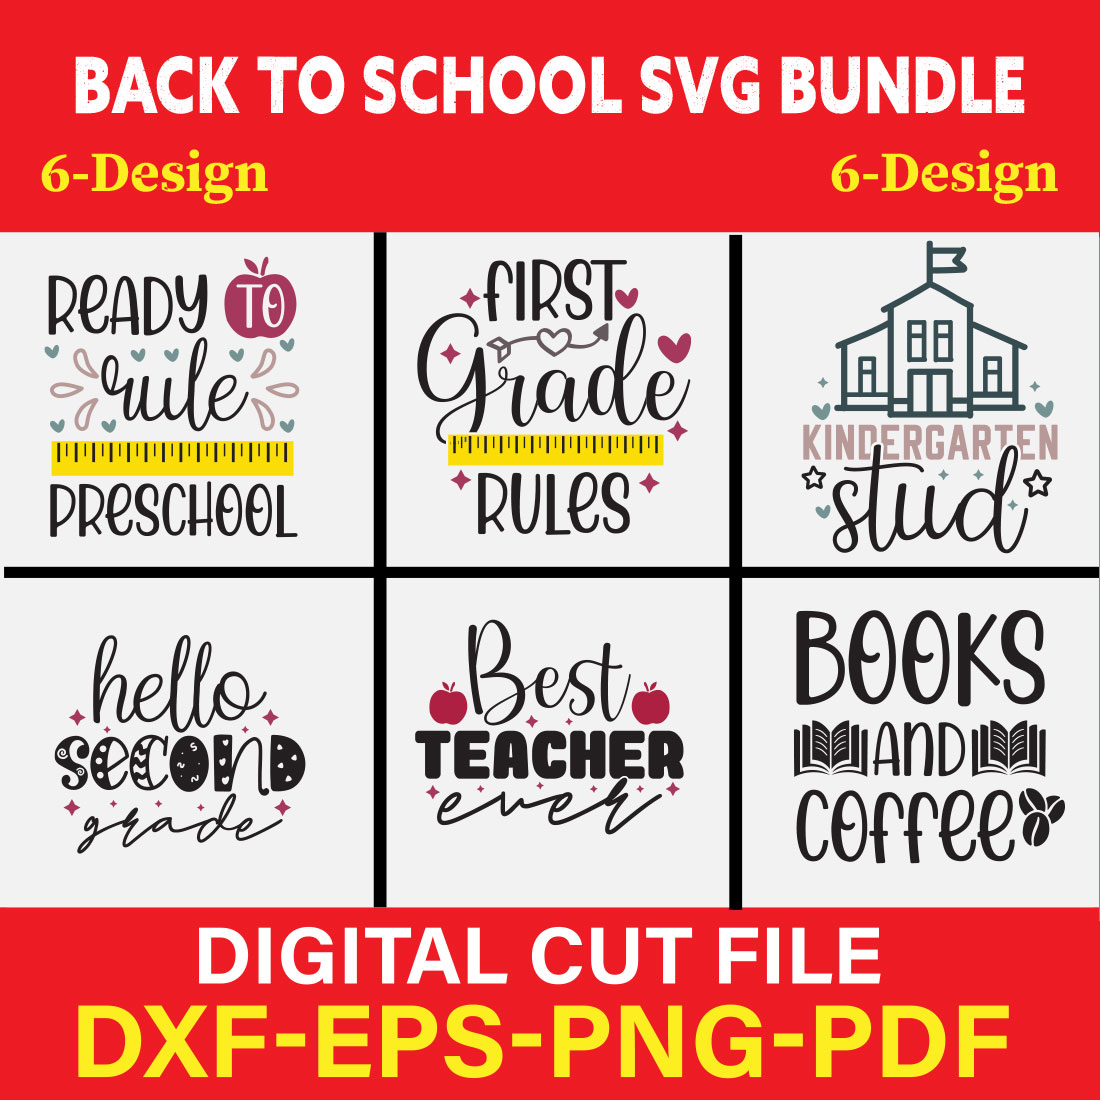 Back to School Svg Bundle SVG Bundle Vol-03 cover image.